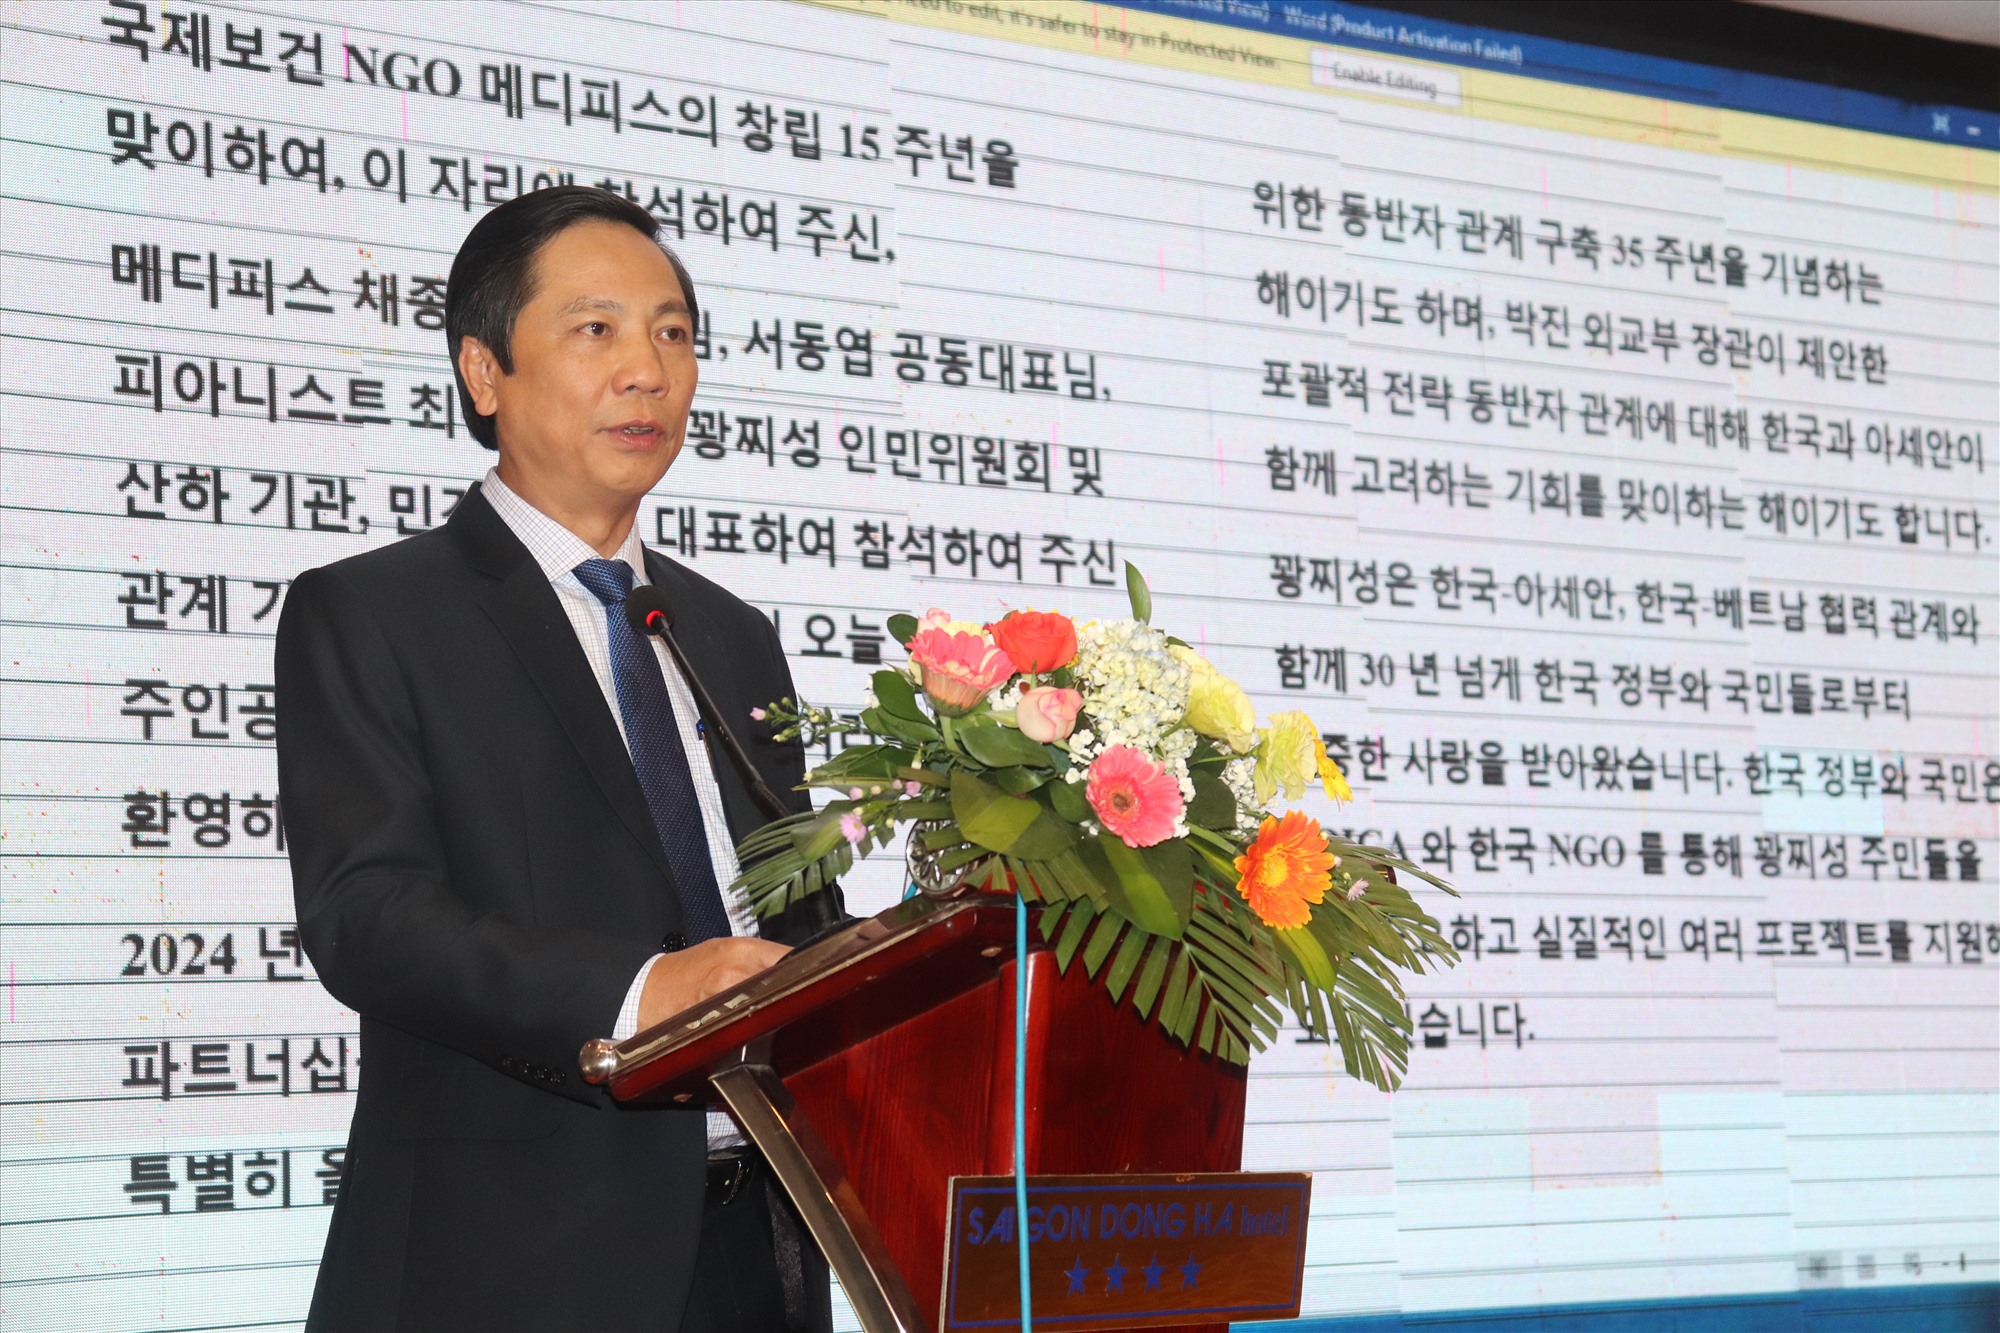 Phó Chủ tịch UBND tỉnh Hoàng Nam gửi lời chúc mừng đến ban lãnh đạo và tập thể nhân viên Medipeace nhân kỷ niệm 15 năm thành lập - Ảnh: T.P